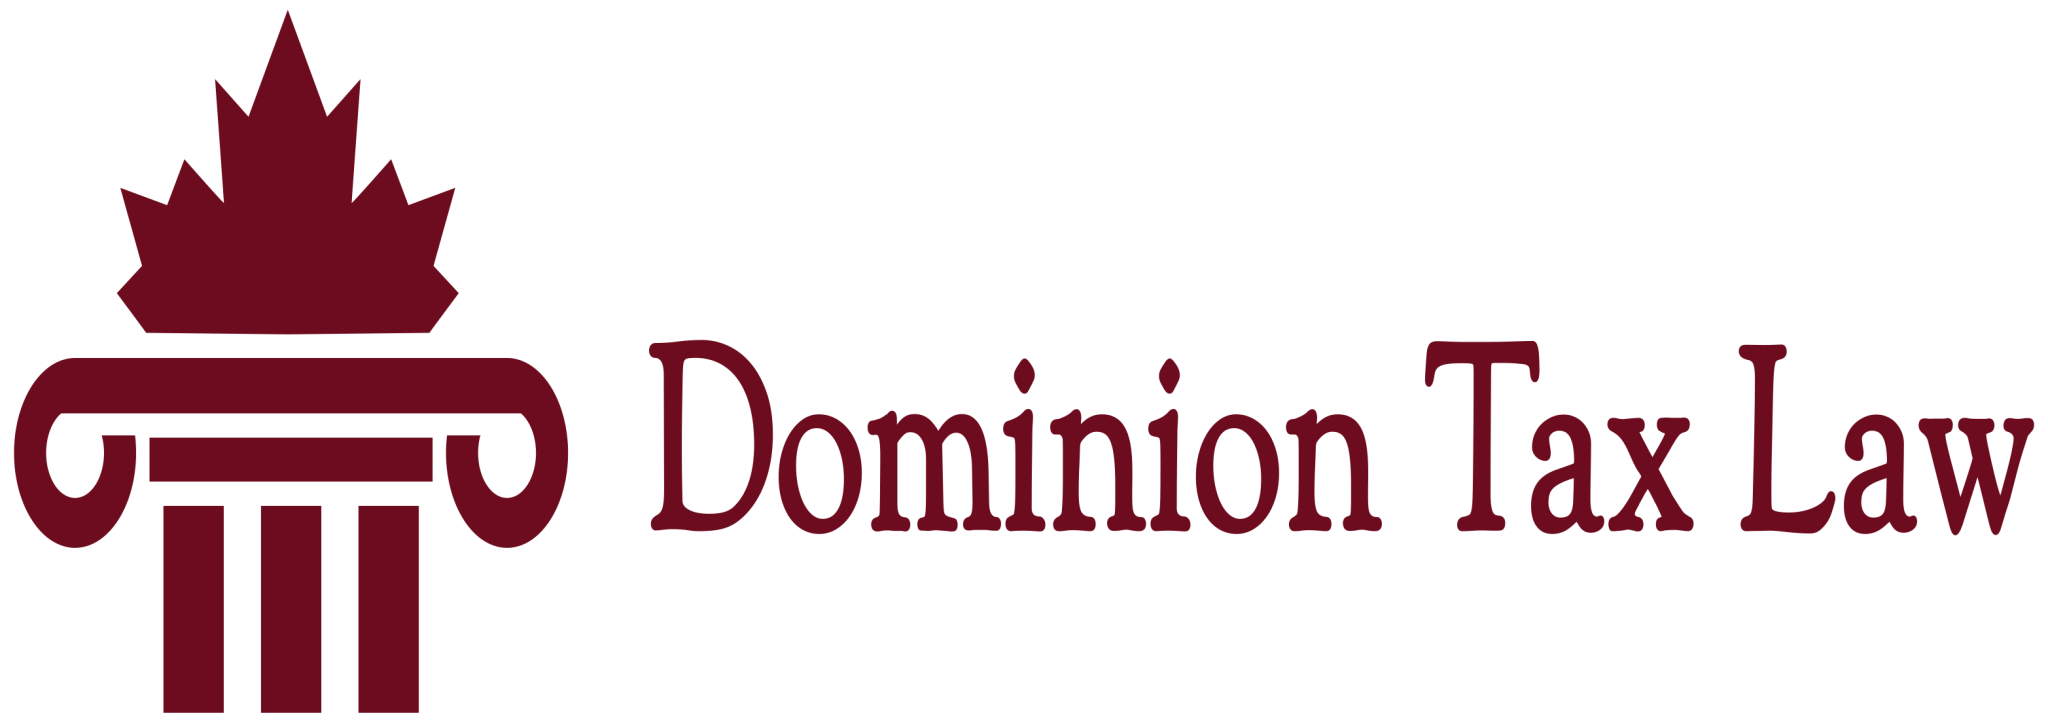 Dominion Tax Law | Canadian Tax Lawyers